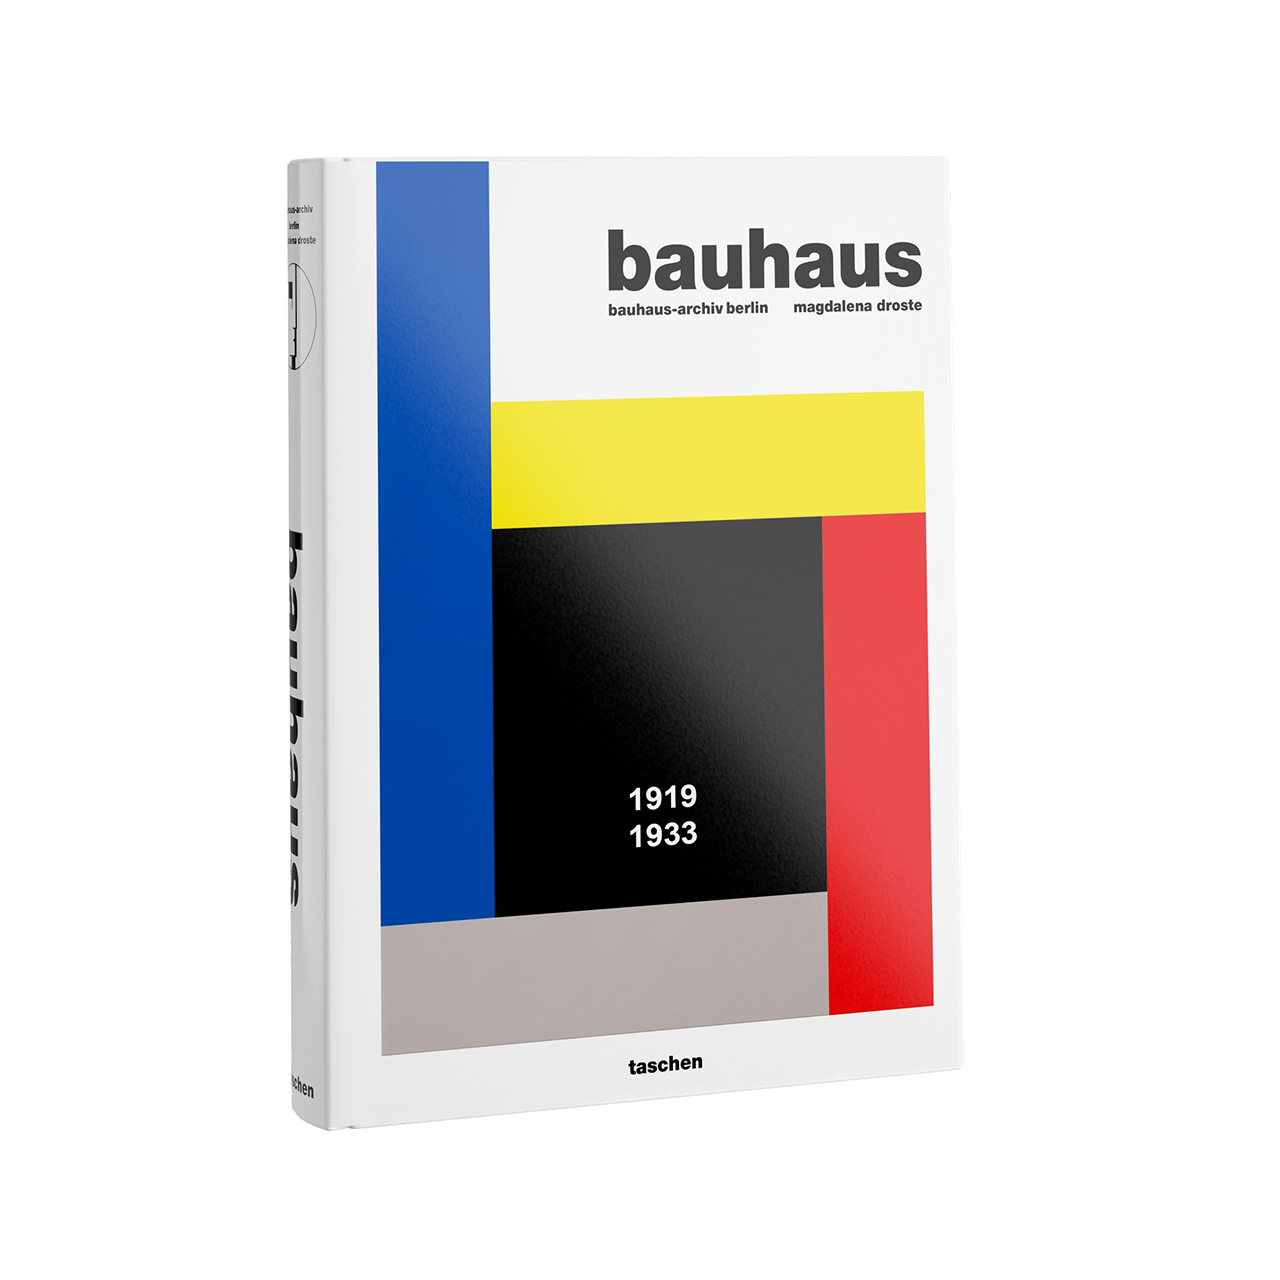 Bauhaus Book by Taschen